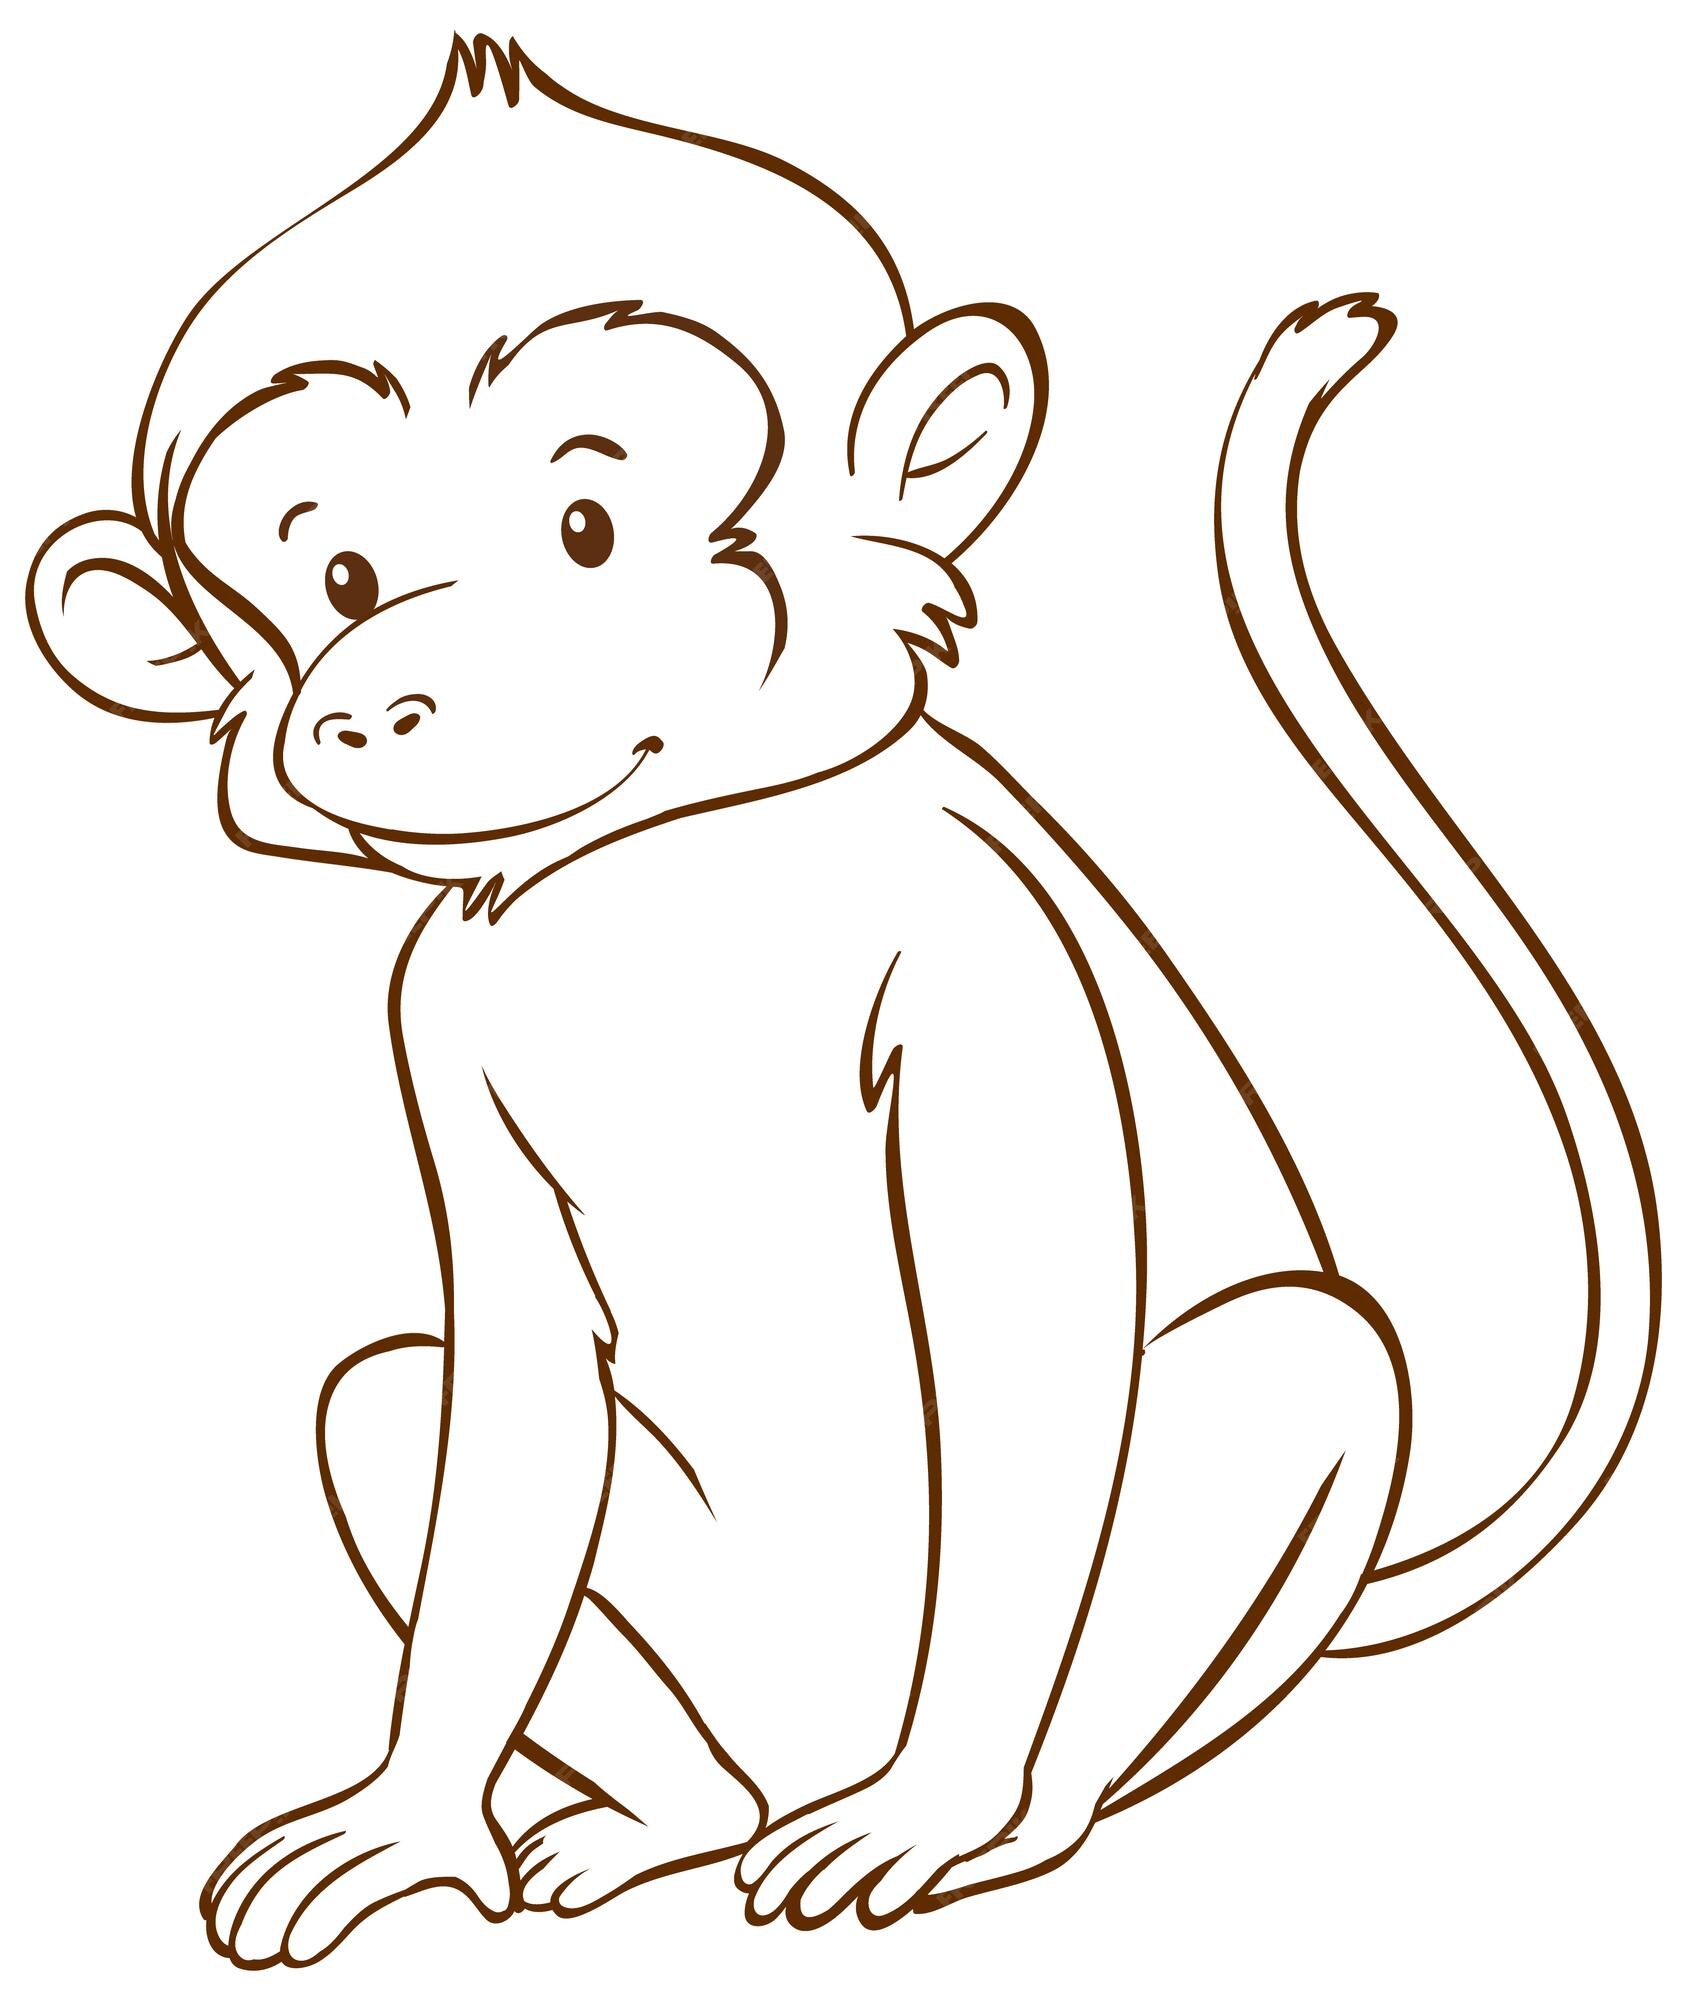 Macaco em estilo simples doodle no fundo branco